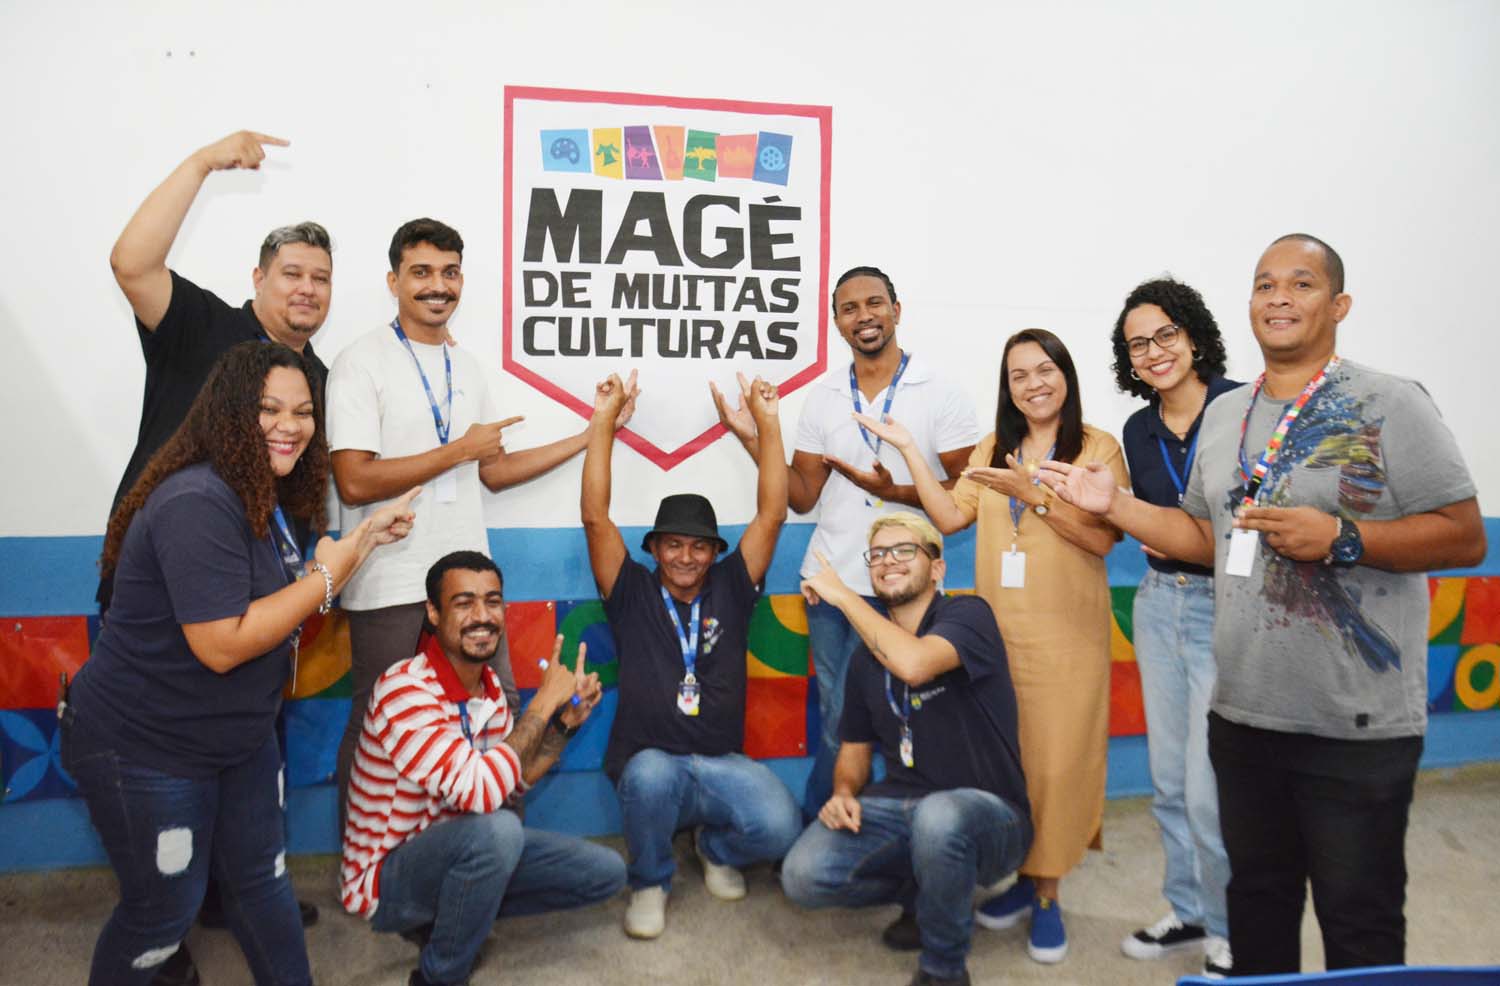 Magé promove consultoria para fazedores de cultura que vão se inscrever no Edital Municipal de Fomento à Cultura